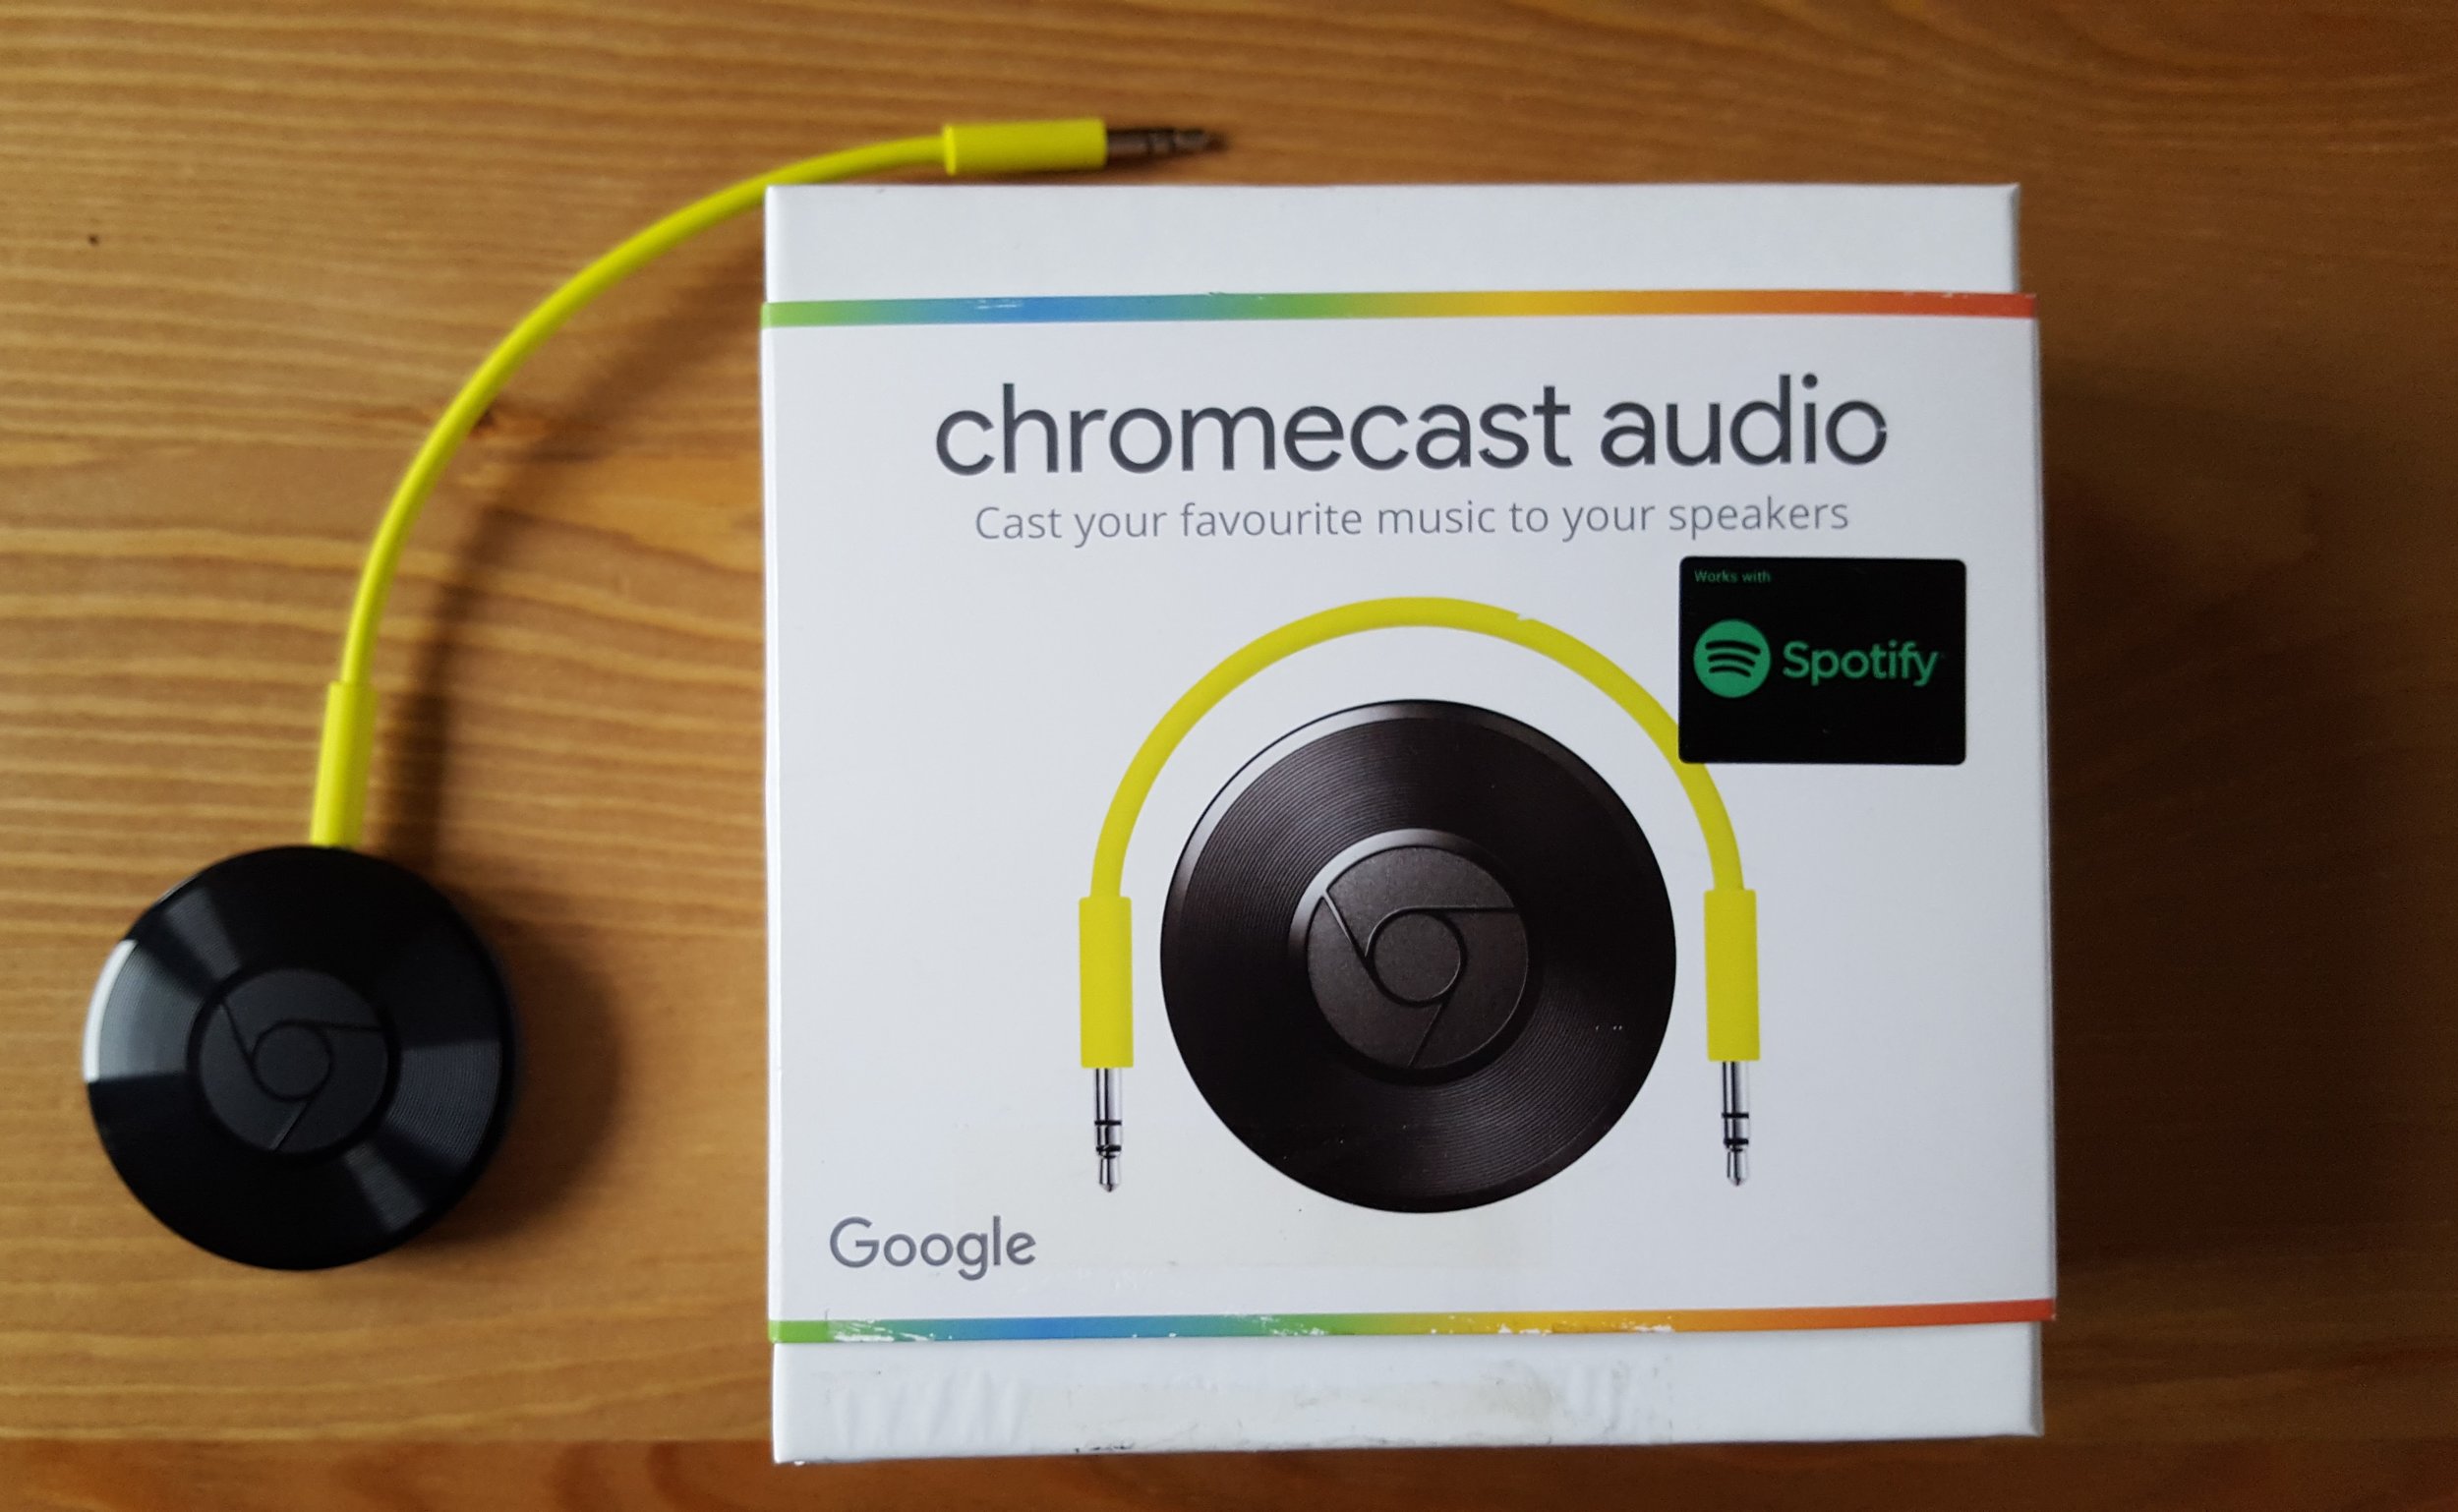 chromecast audio to speakers